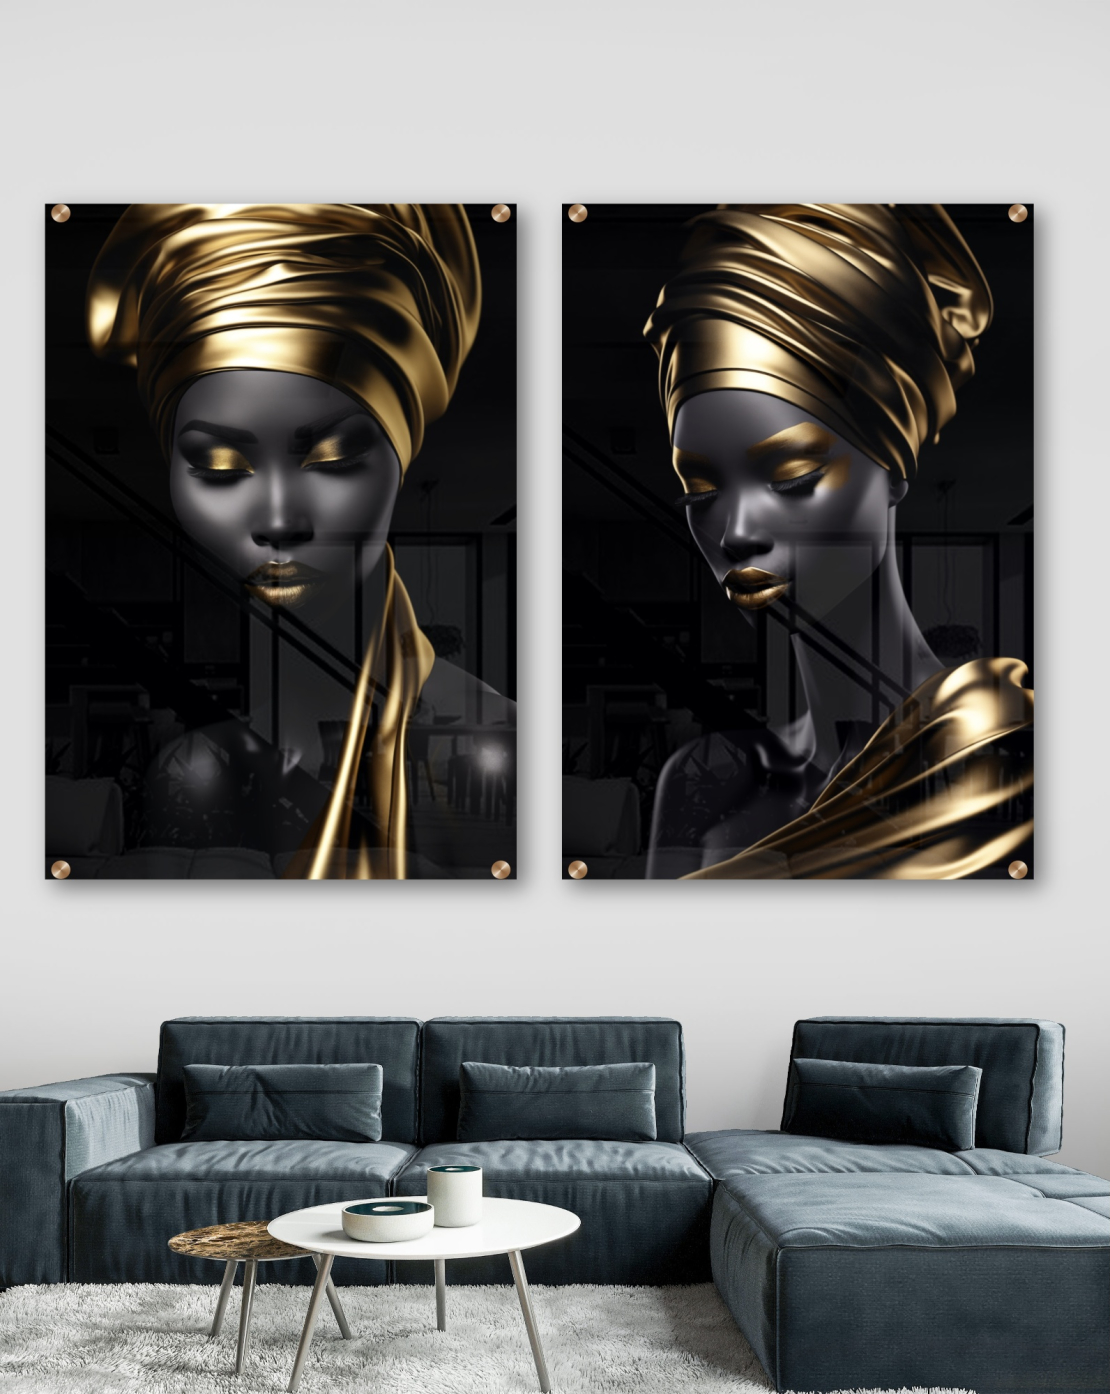 זוג תמונות זכוכית מיוחדות לסלון אפריקאיות 